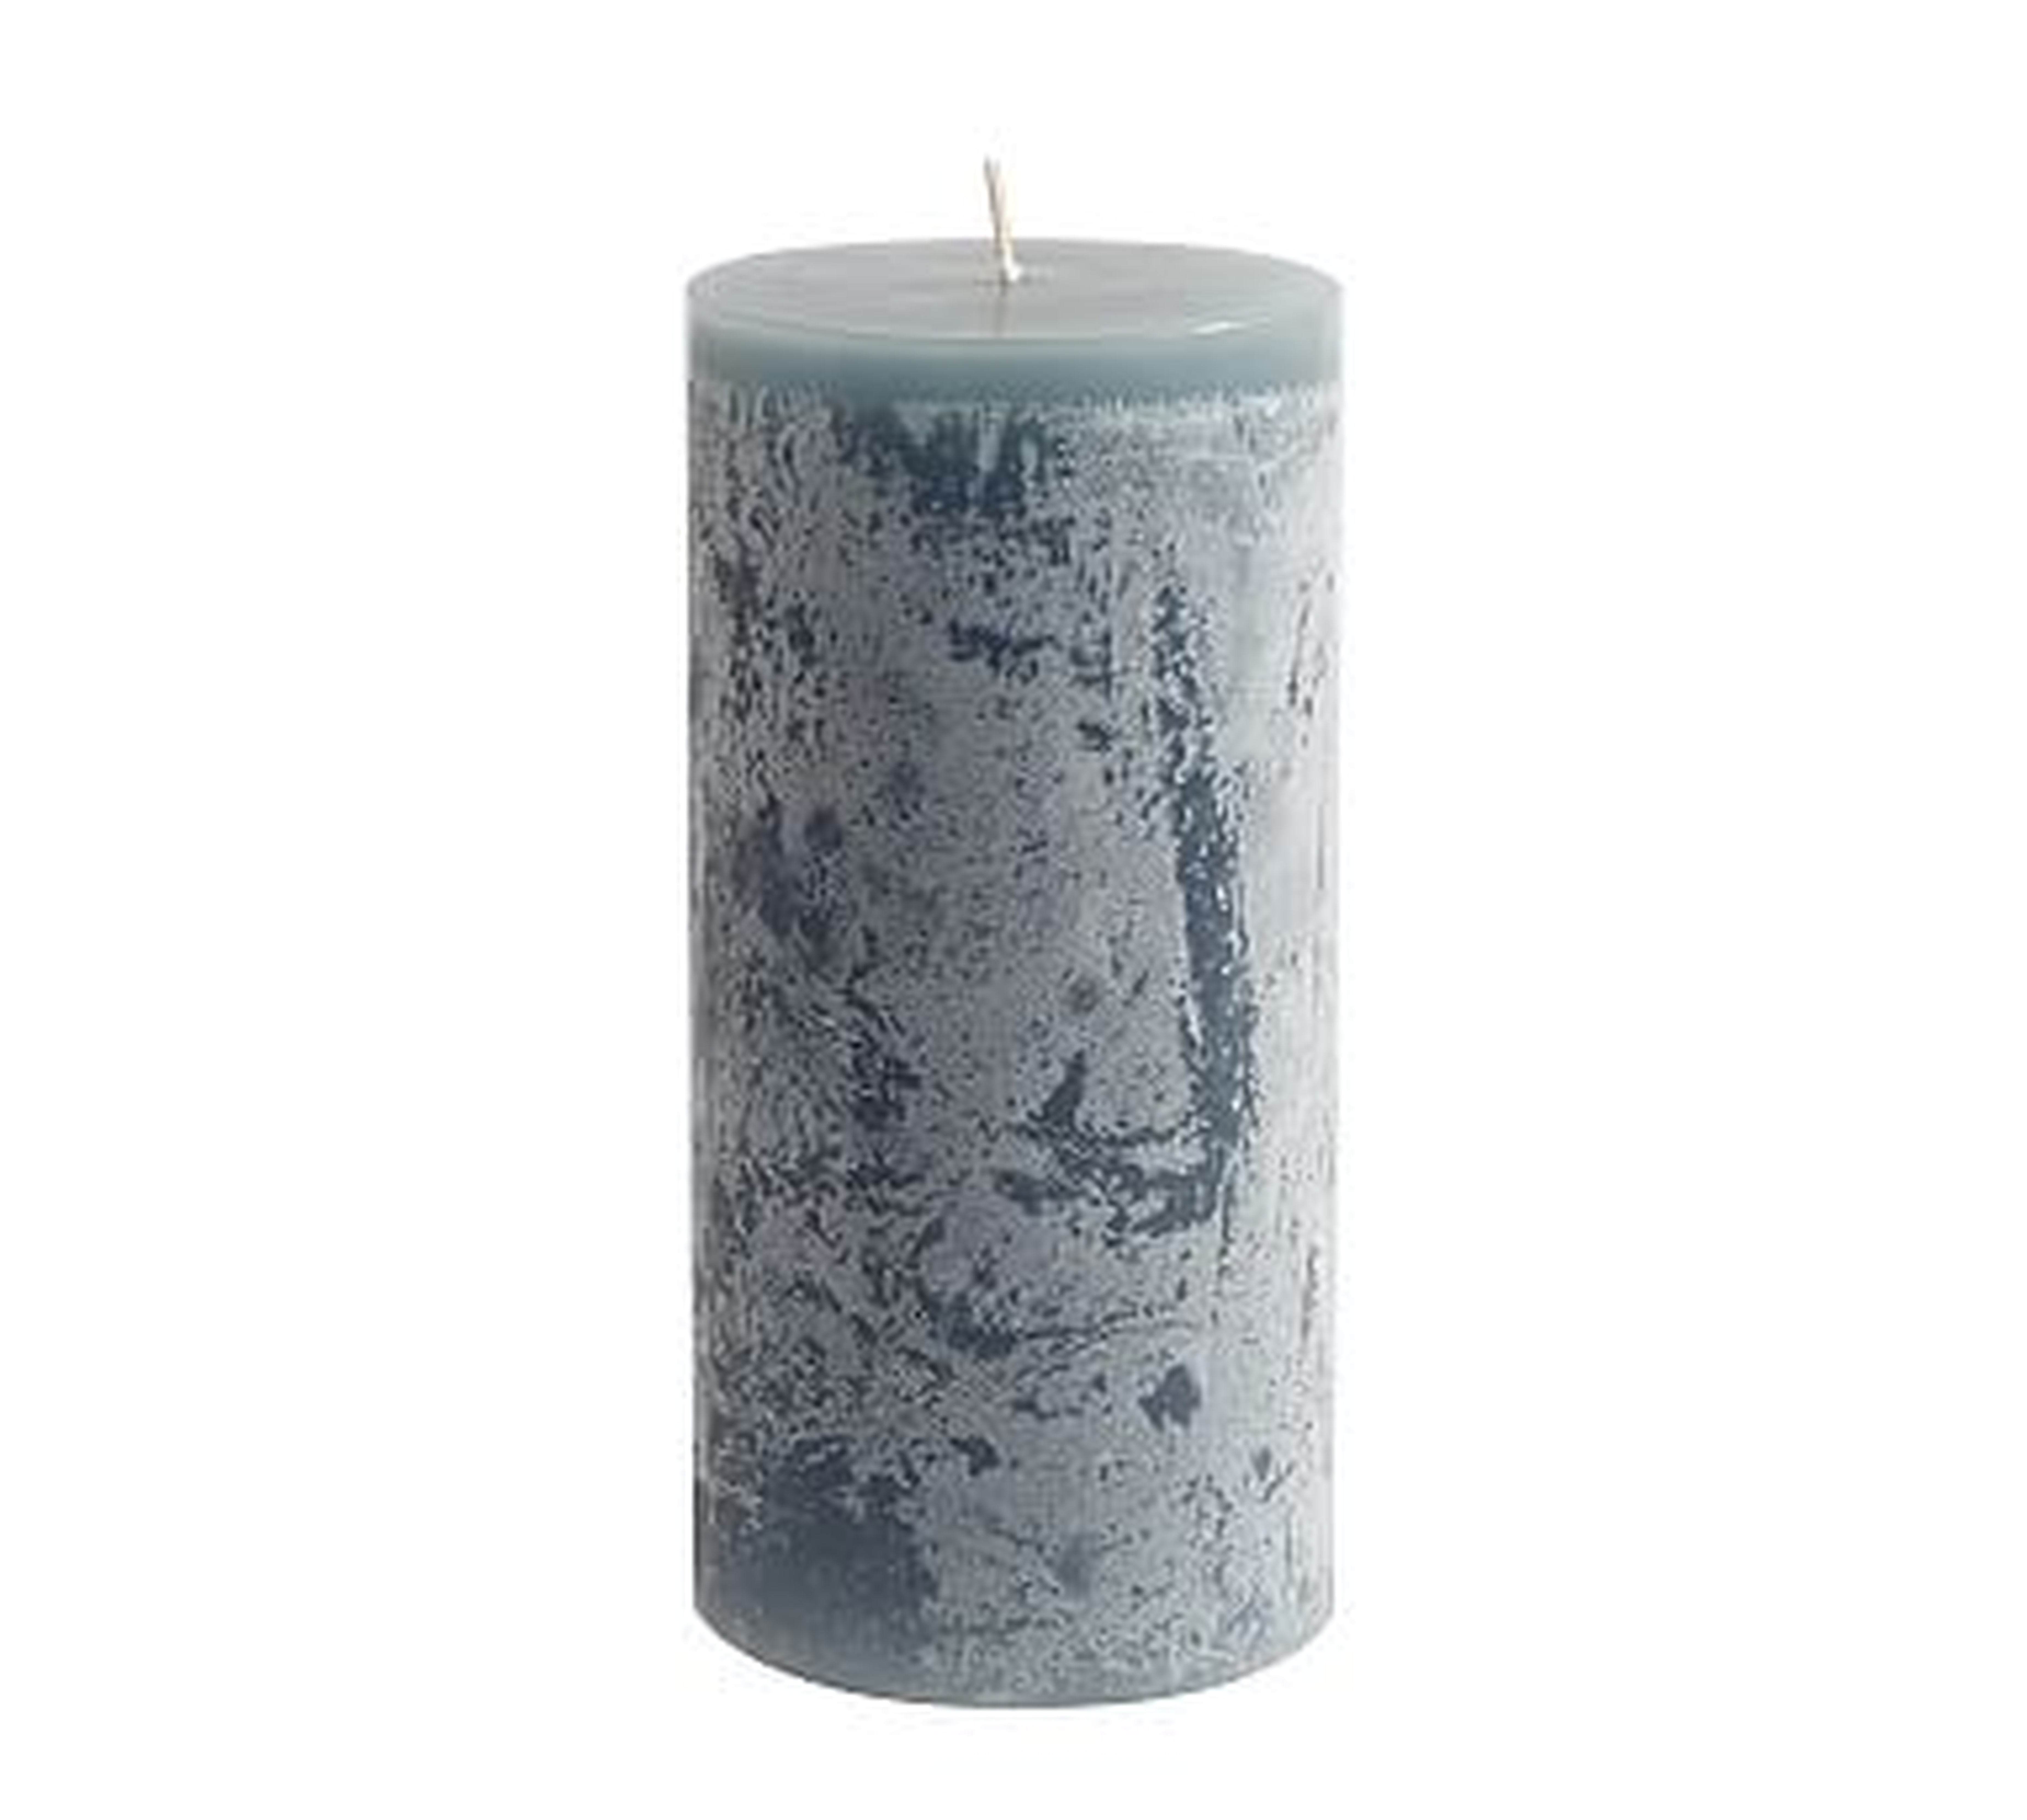 Scented Timber Pillar Candles, Flint Blue, Blackberry Yuzu, 3" x 6" - Pottery Barn